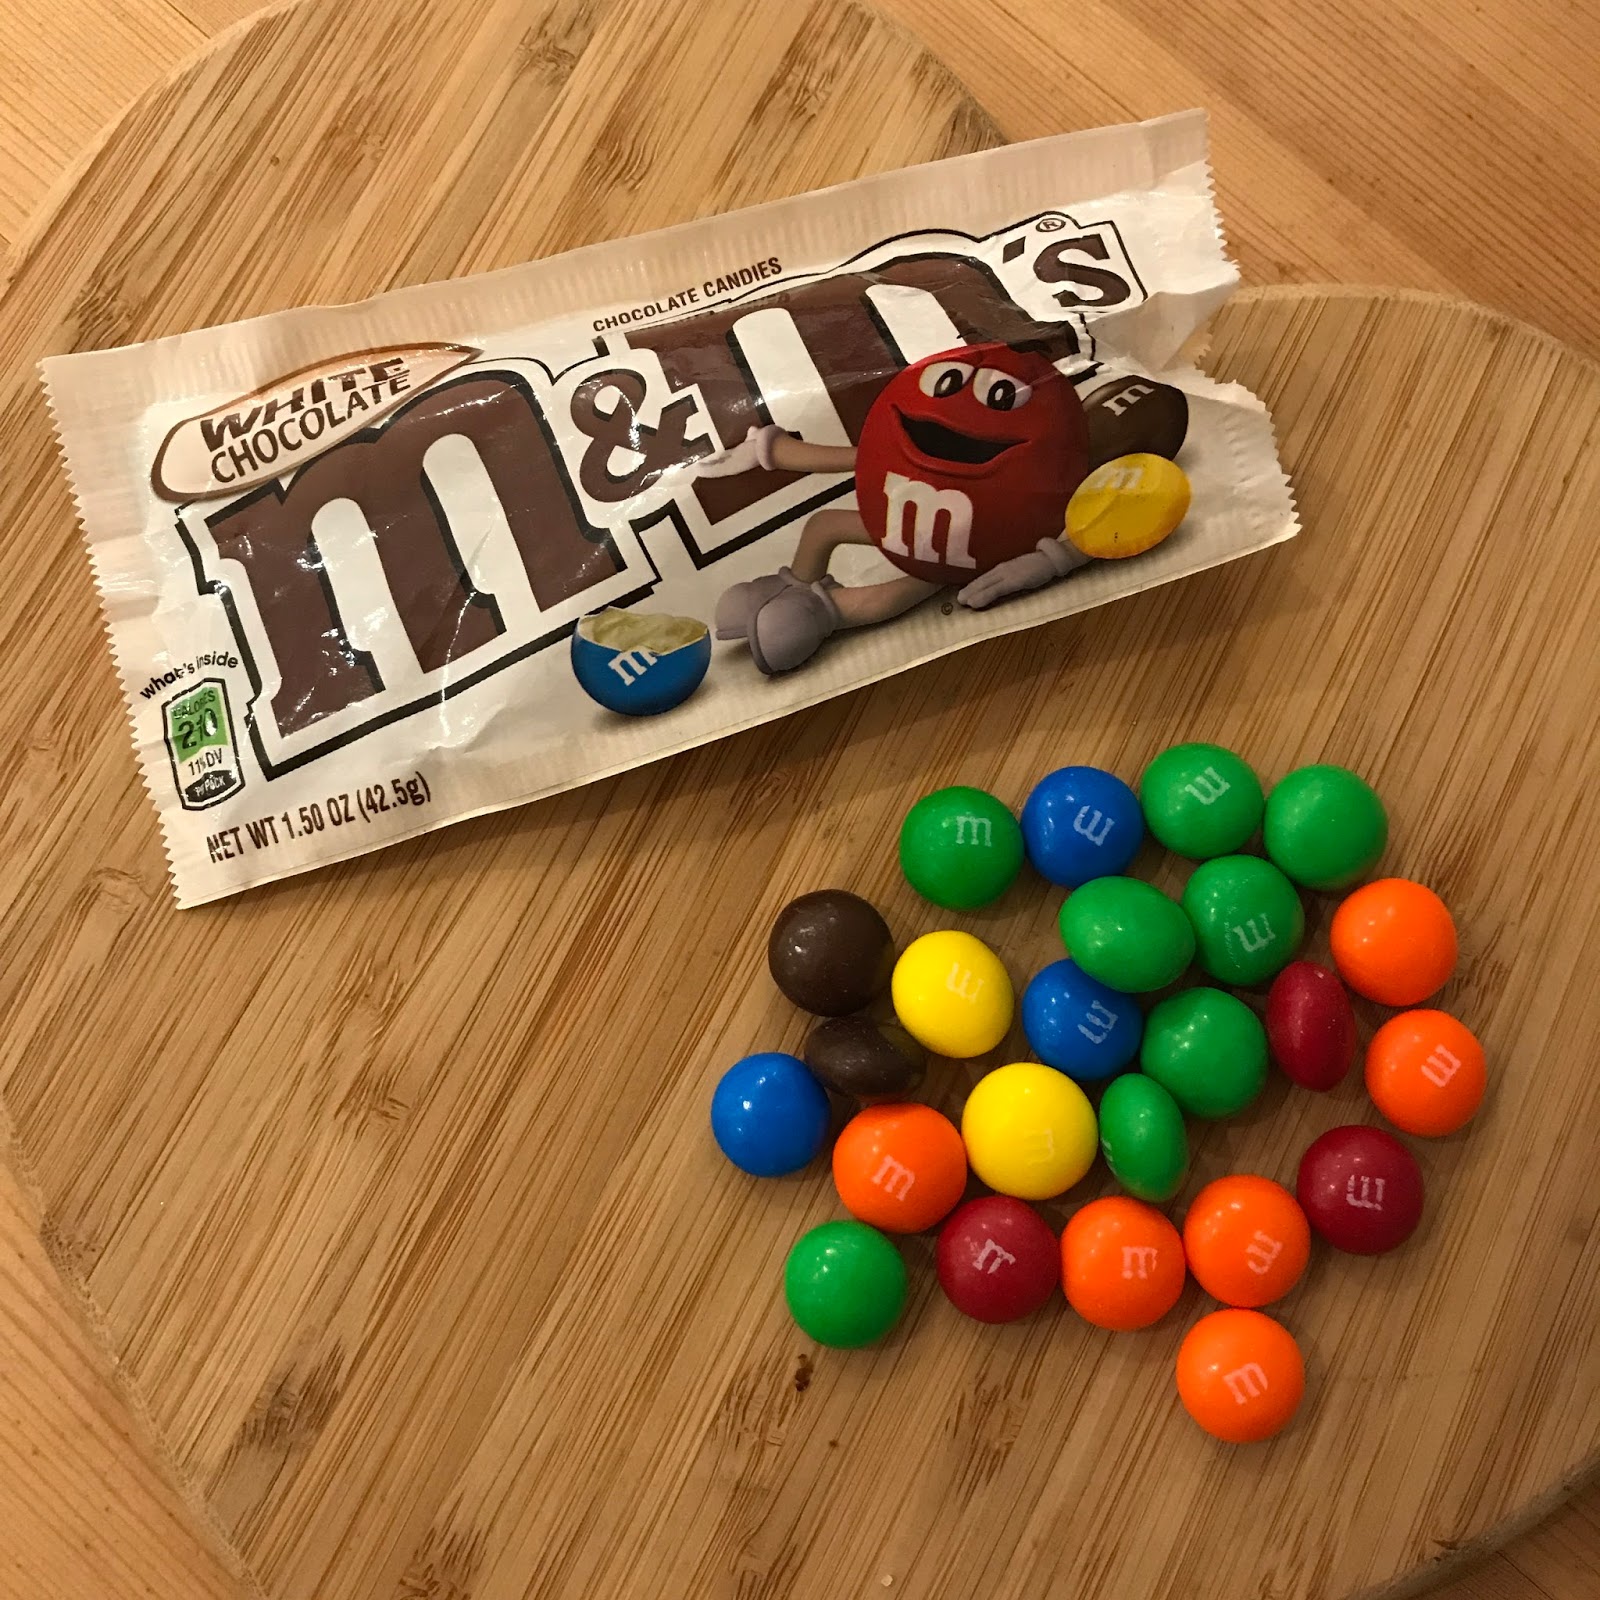 m&ms taste different